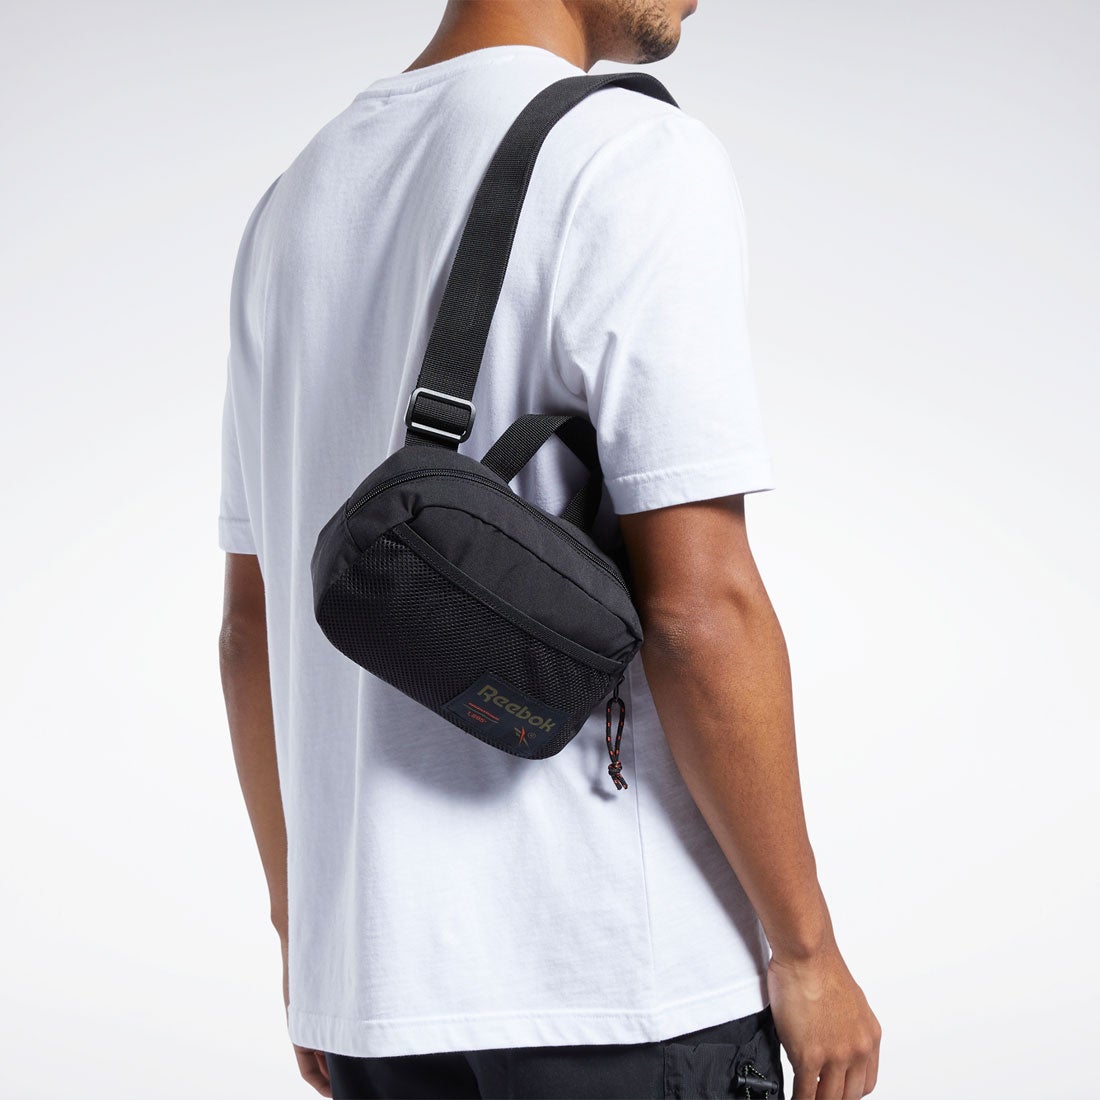 アウトドアSショルダーバッグ / CL Outdoor S Shoulder Bag （ブラック） -Reebok 公式オンラインショップ